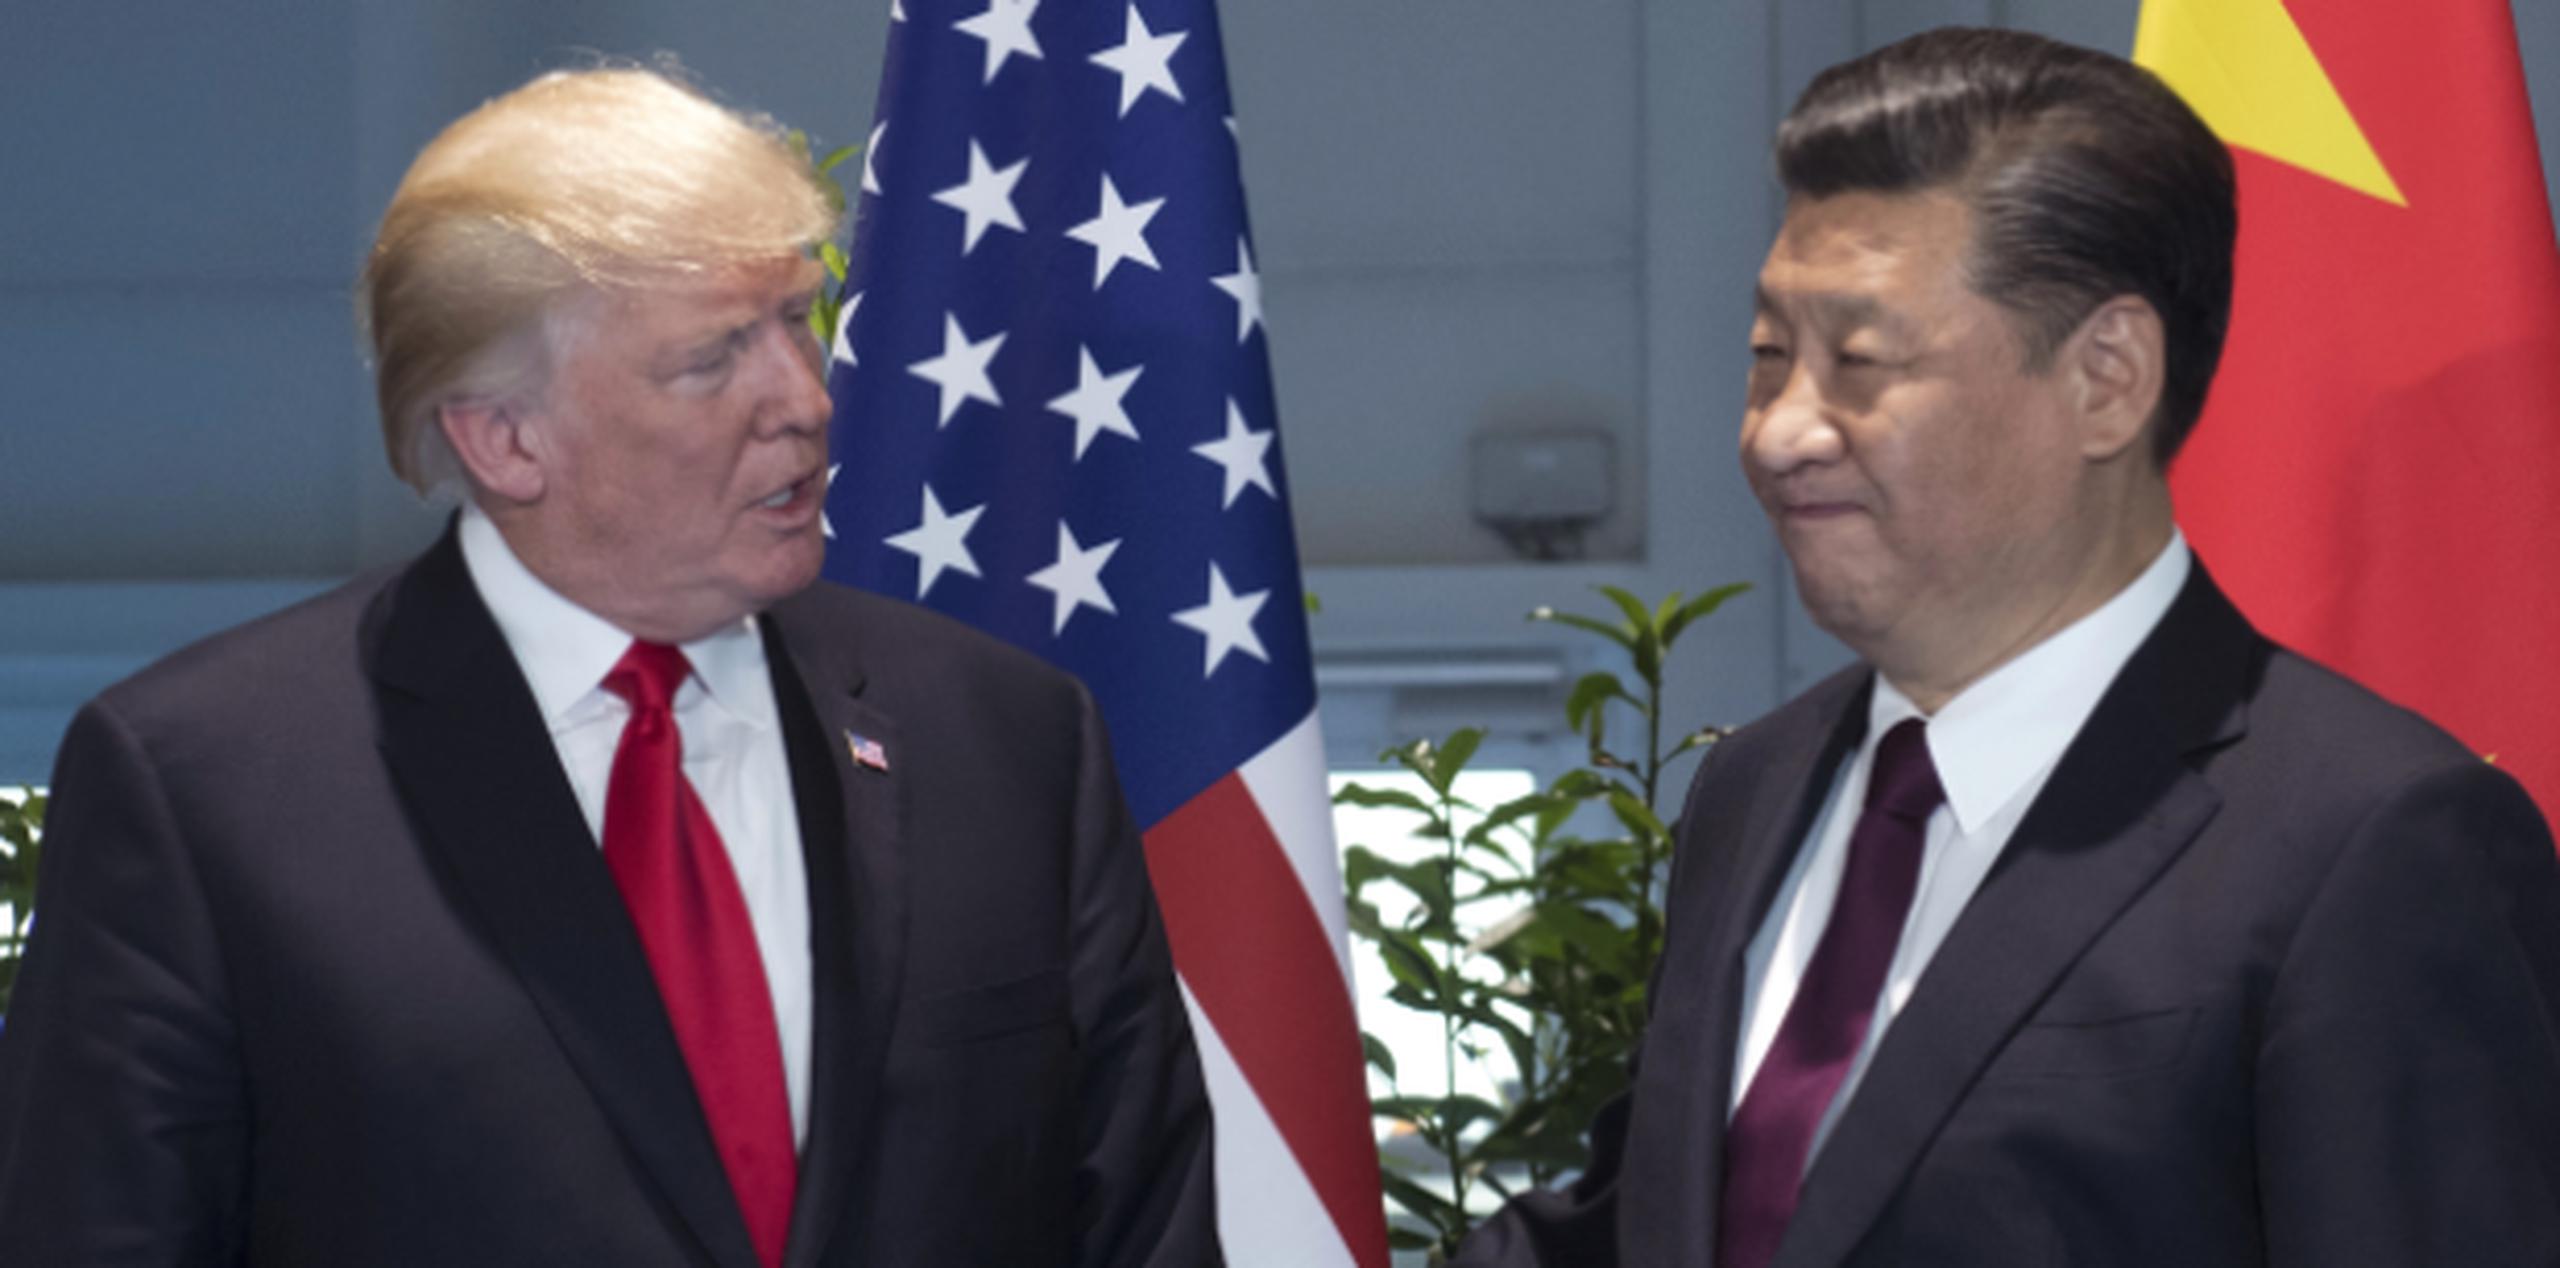 La Casa Blanca dijo en un comunicado que Trump y Xi “acordaron que Corea del Norte debe detener su conducta provocadora y escaladora”. (Archivo)